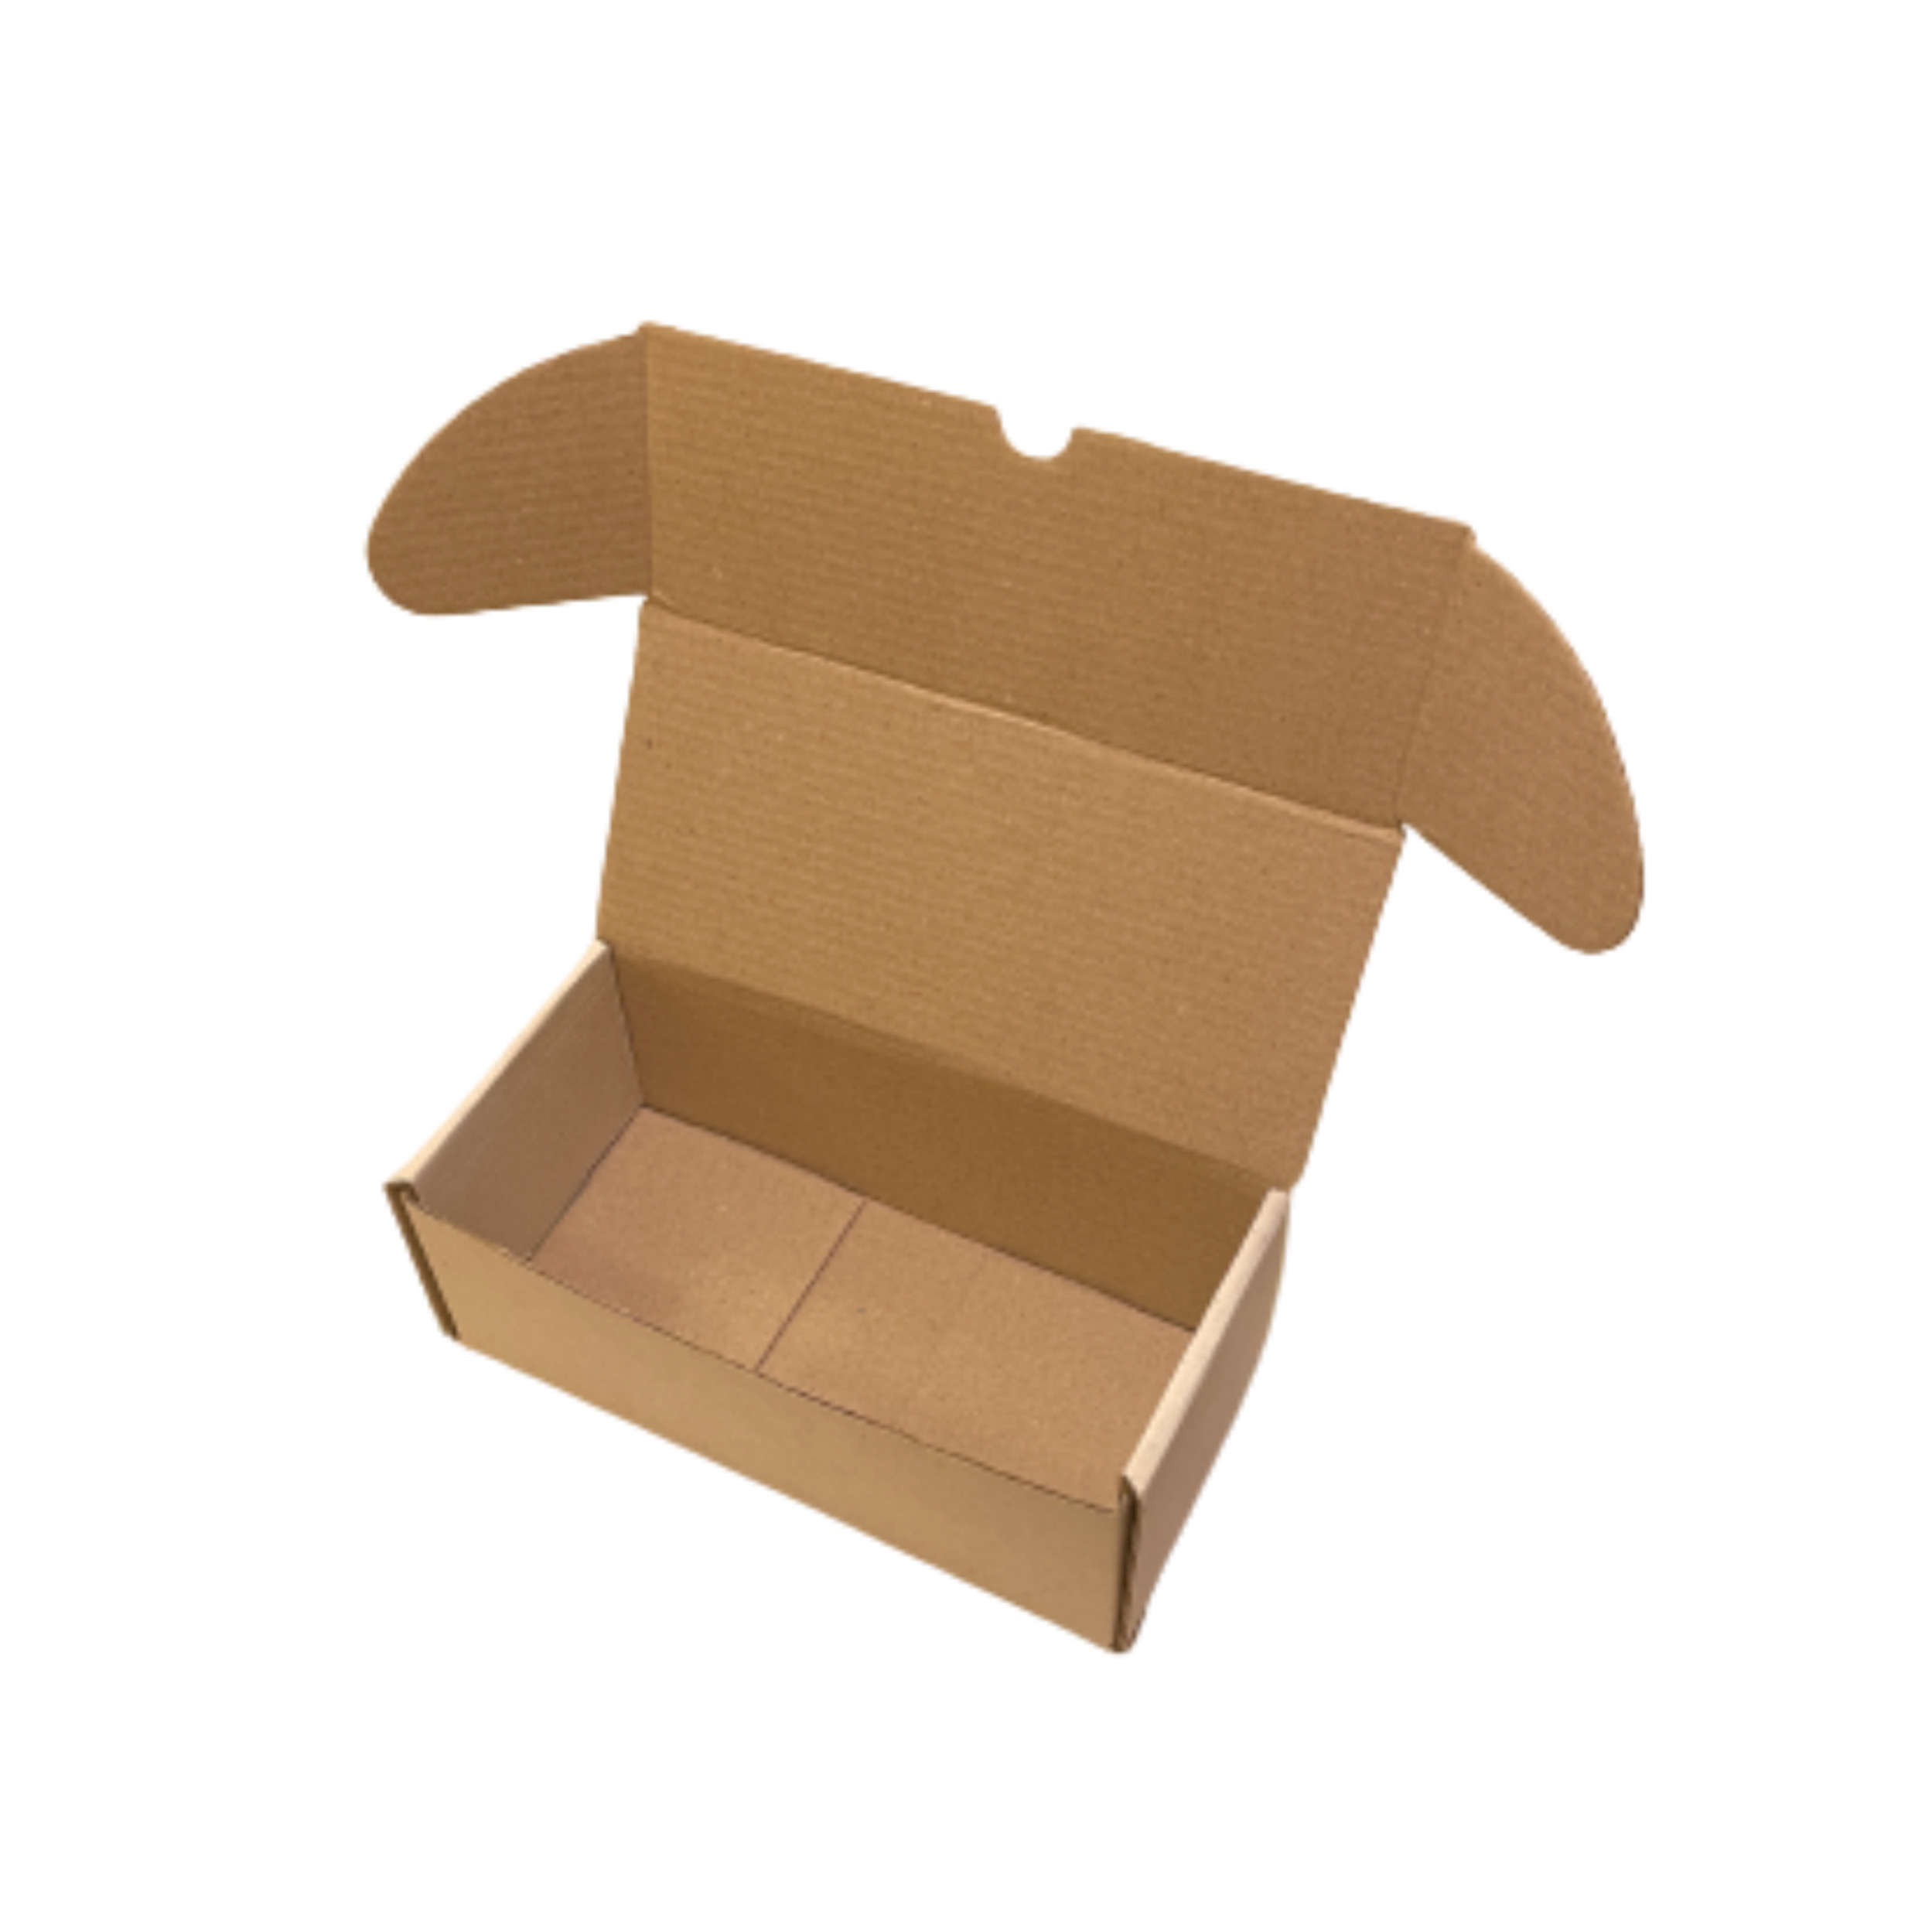 جعبه بسته بندی مدل 3 لایه ایفلوت بسته 25 عددی